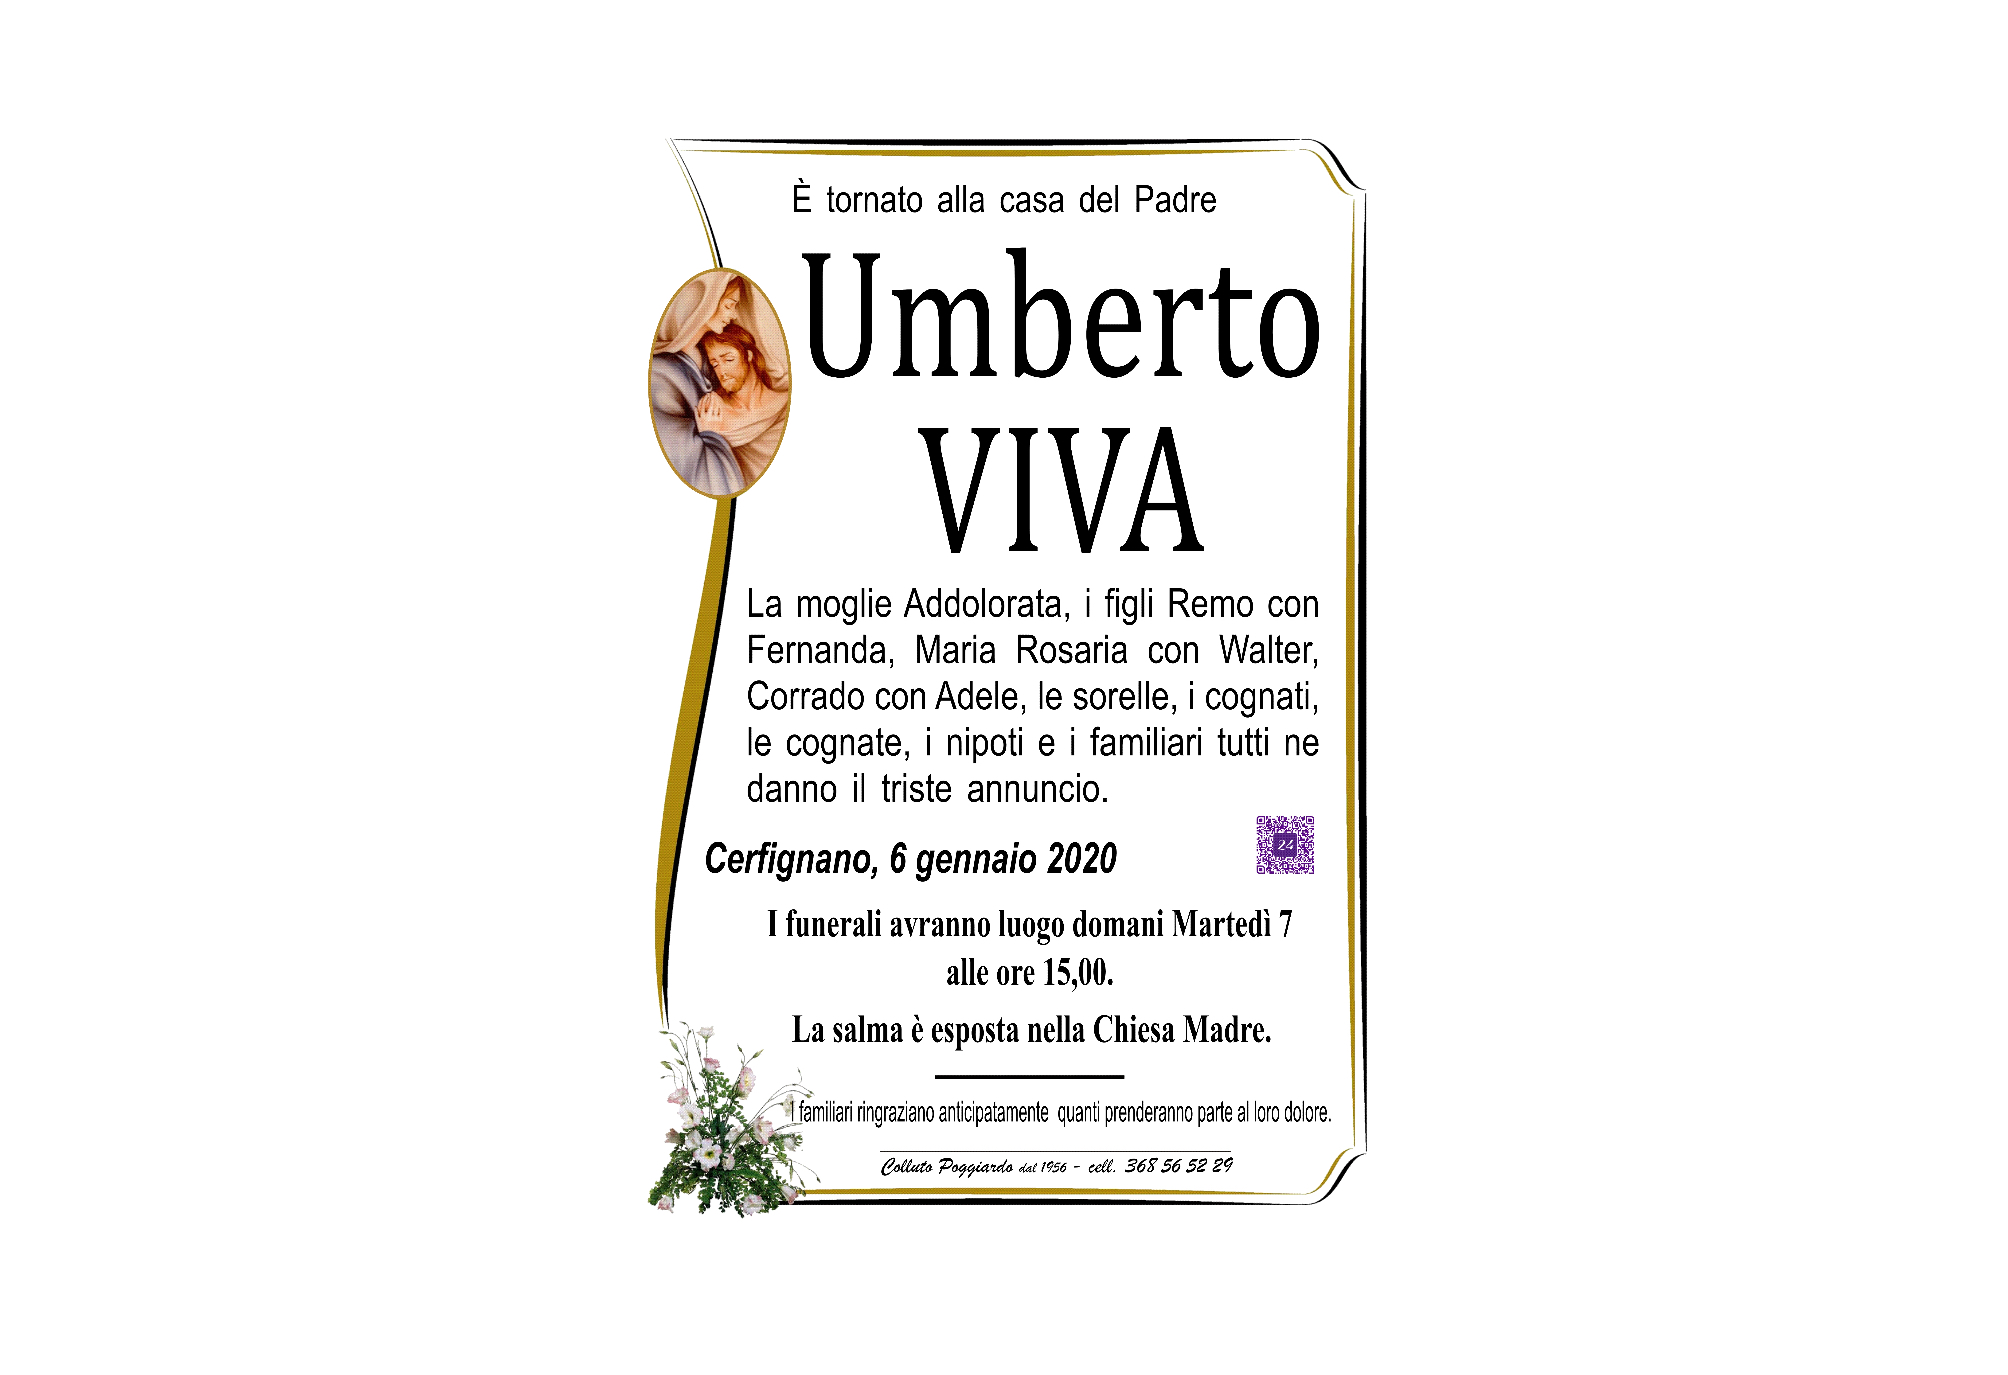 Umberto Viva